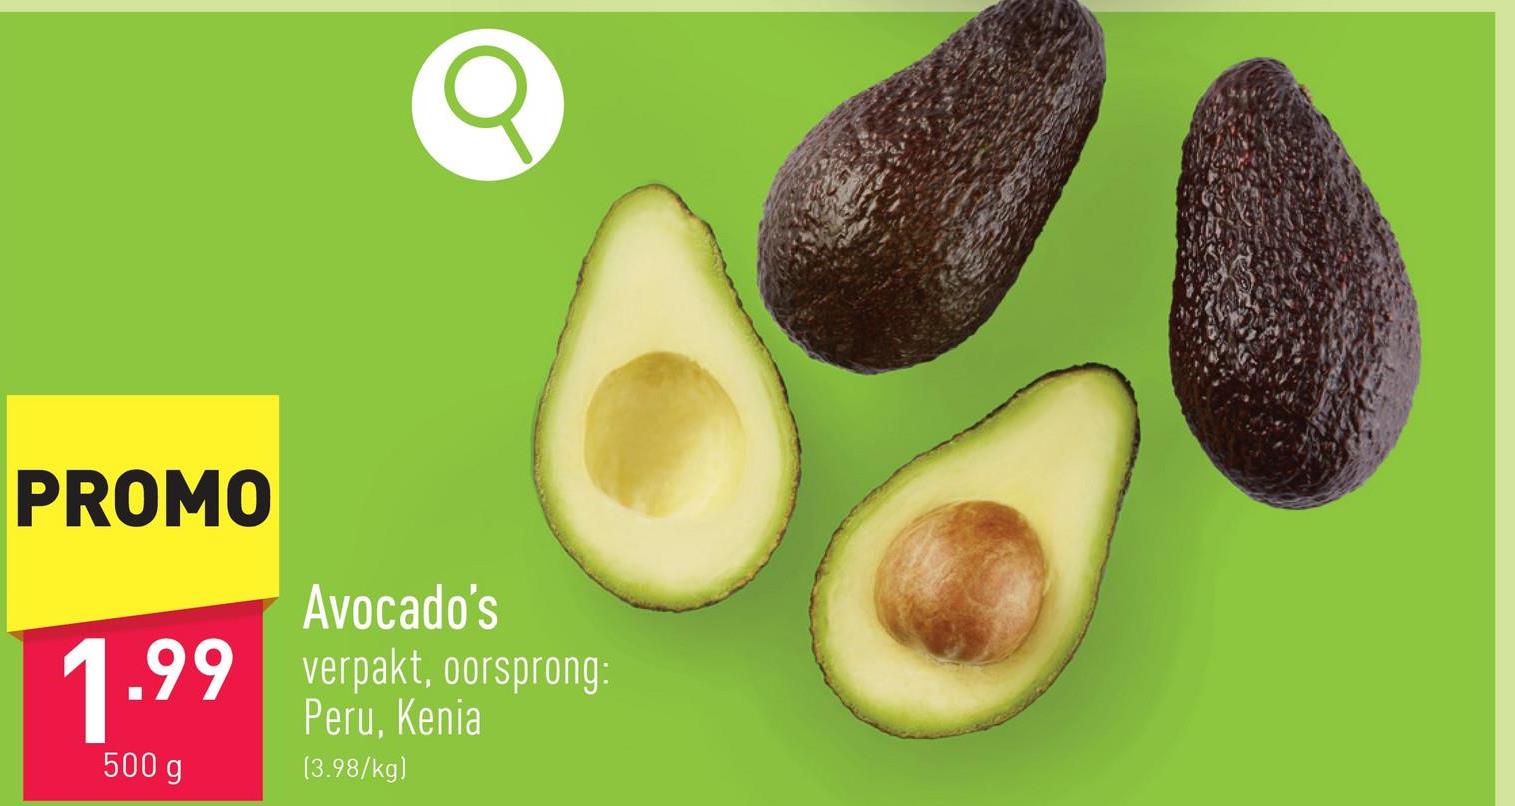 Avocado's verpakt, oorsprong: Peru, Kenia